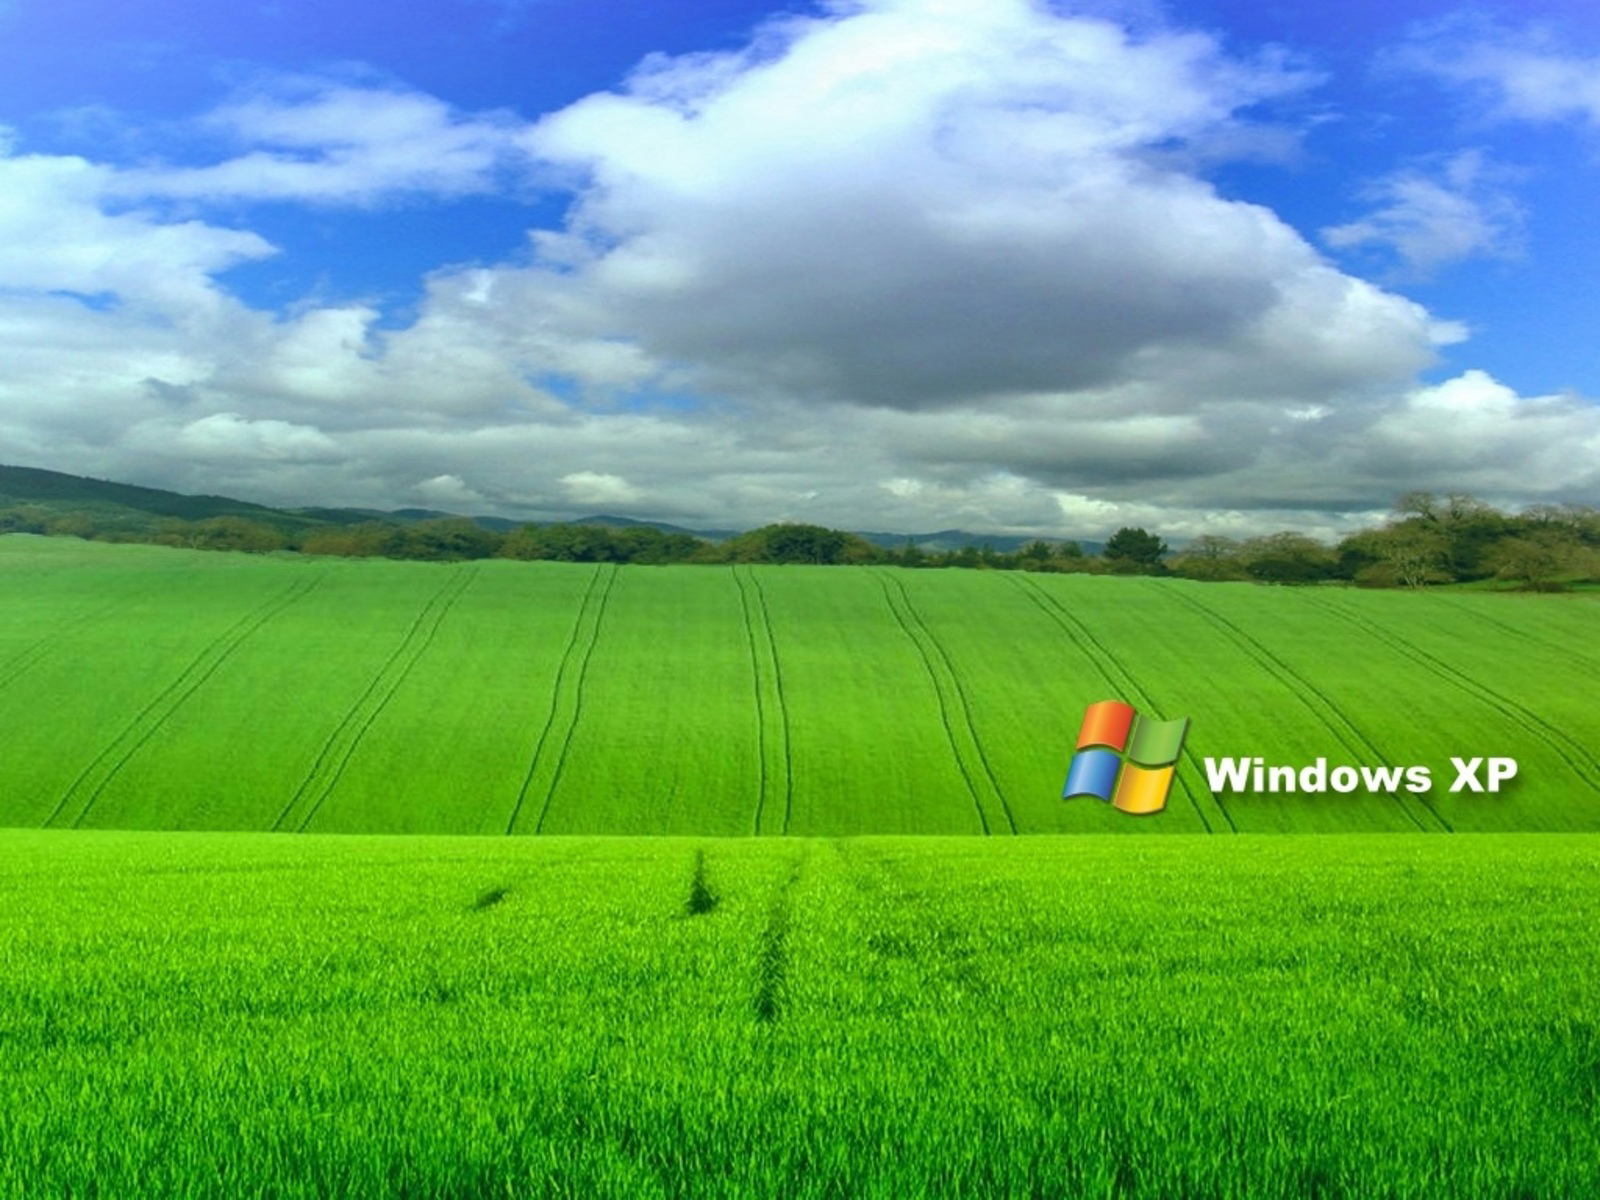 Windows XP hình nền máy tính: Sự đơn giản và thân thiện của Windows XP đã khiến cho nhiều người yêu thích hệ điều hành này. Một phần đó chính là những bức hình nền máy tính đẹp mắt, tạo cảm giác thoải mái cho người dùng. Hãy cùng khám phá những bức hình nền Windows XP độc đáo và tuyệt đẹp.